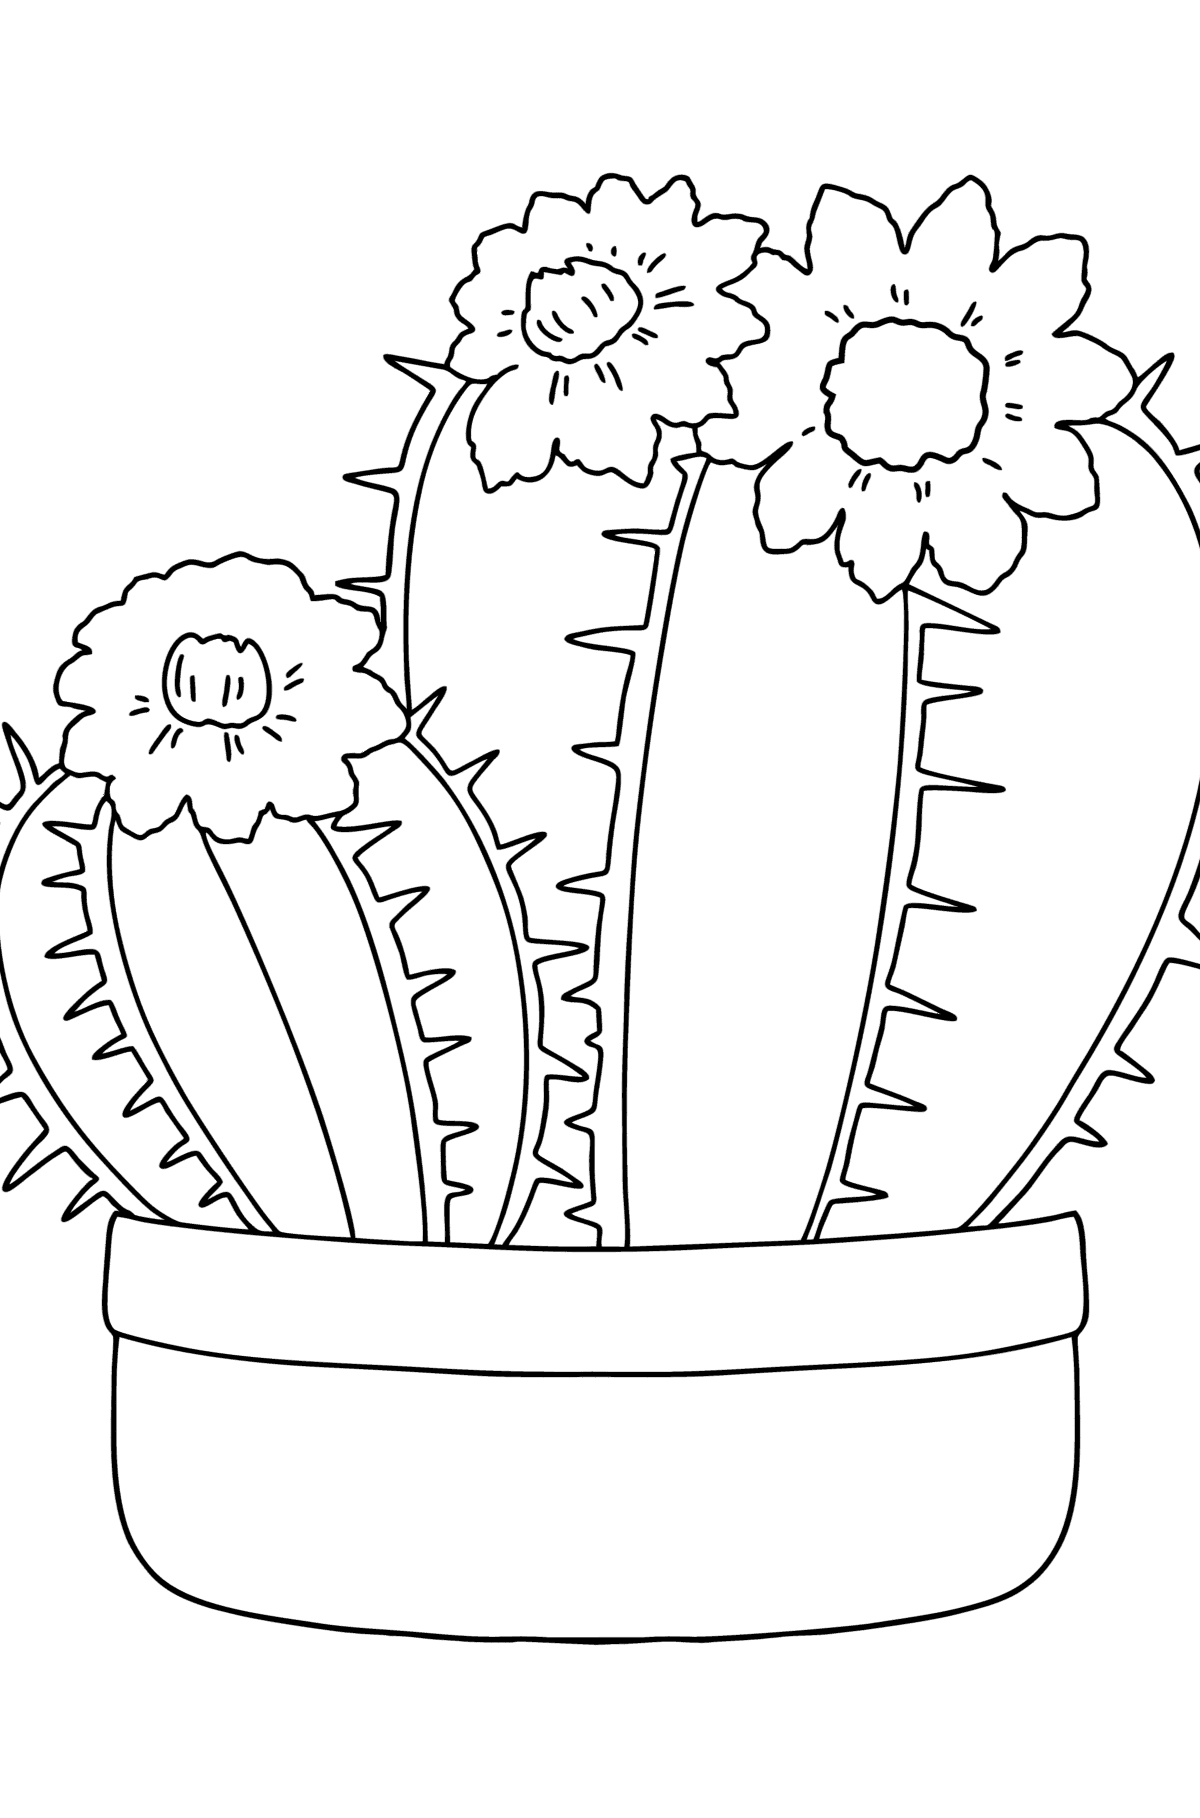 Tegning til farvning ikke kaktus - Tegninger til farvelægning for børn